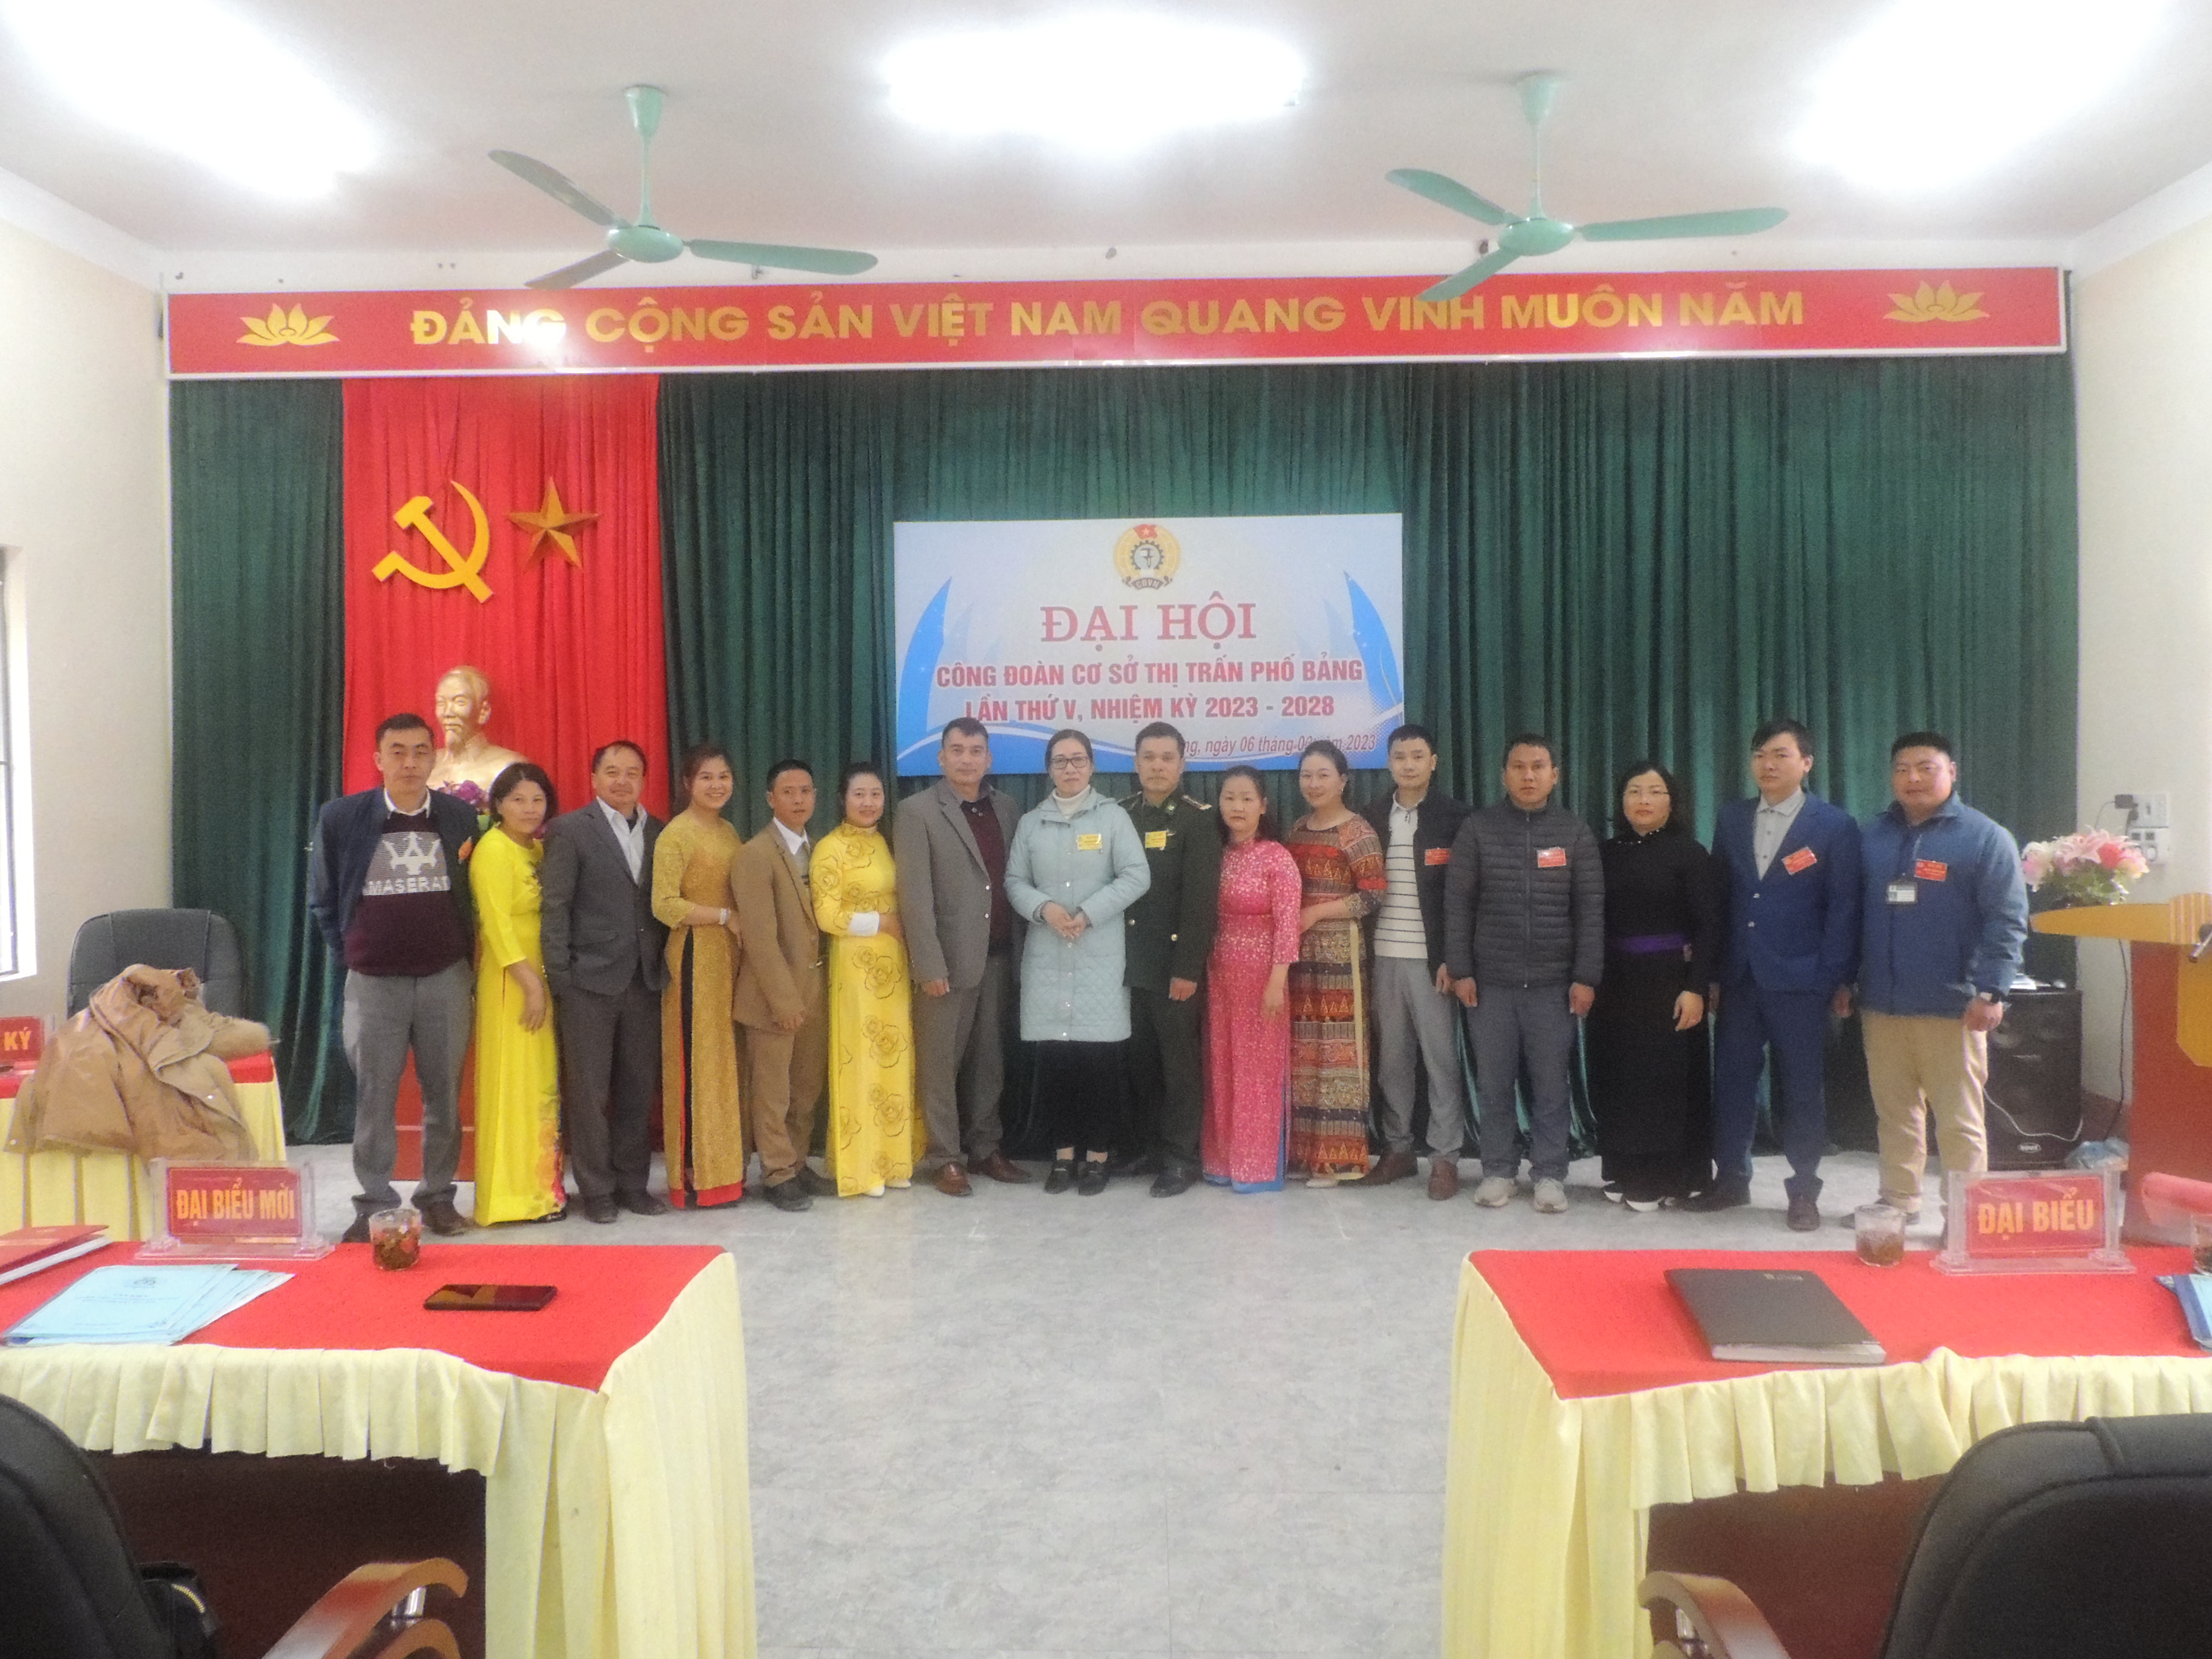 Đại hội Công đoàn cơ sở thị trấn Phố Bảng, nhiệm kỳ 2023 - 2028